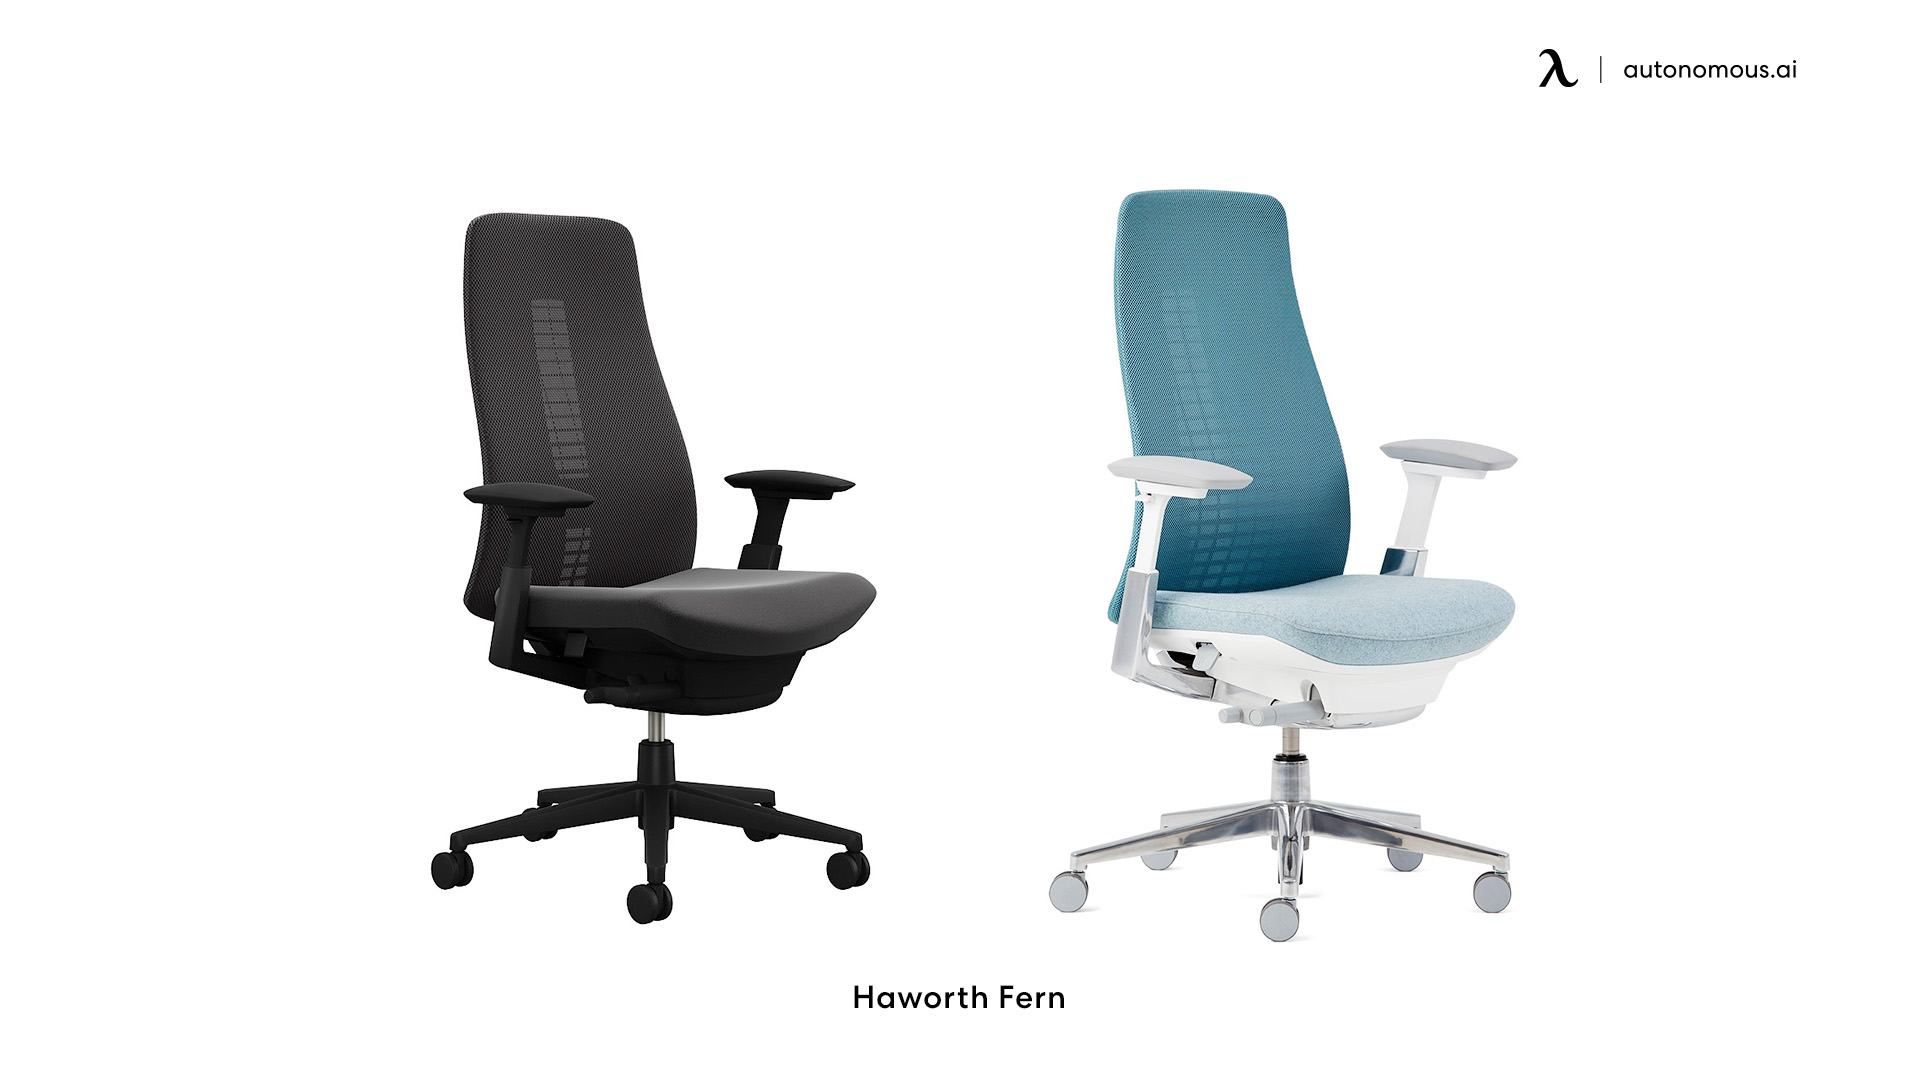 Haworth Fern modern office chair